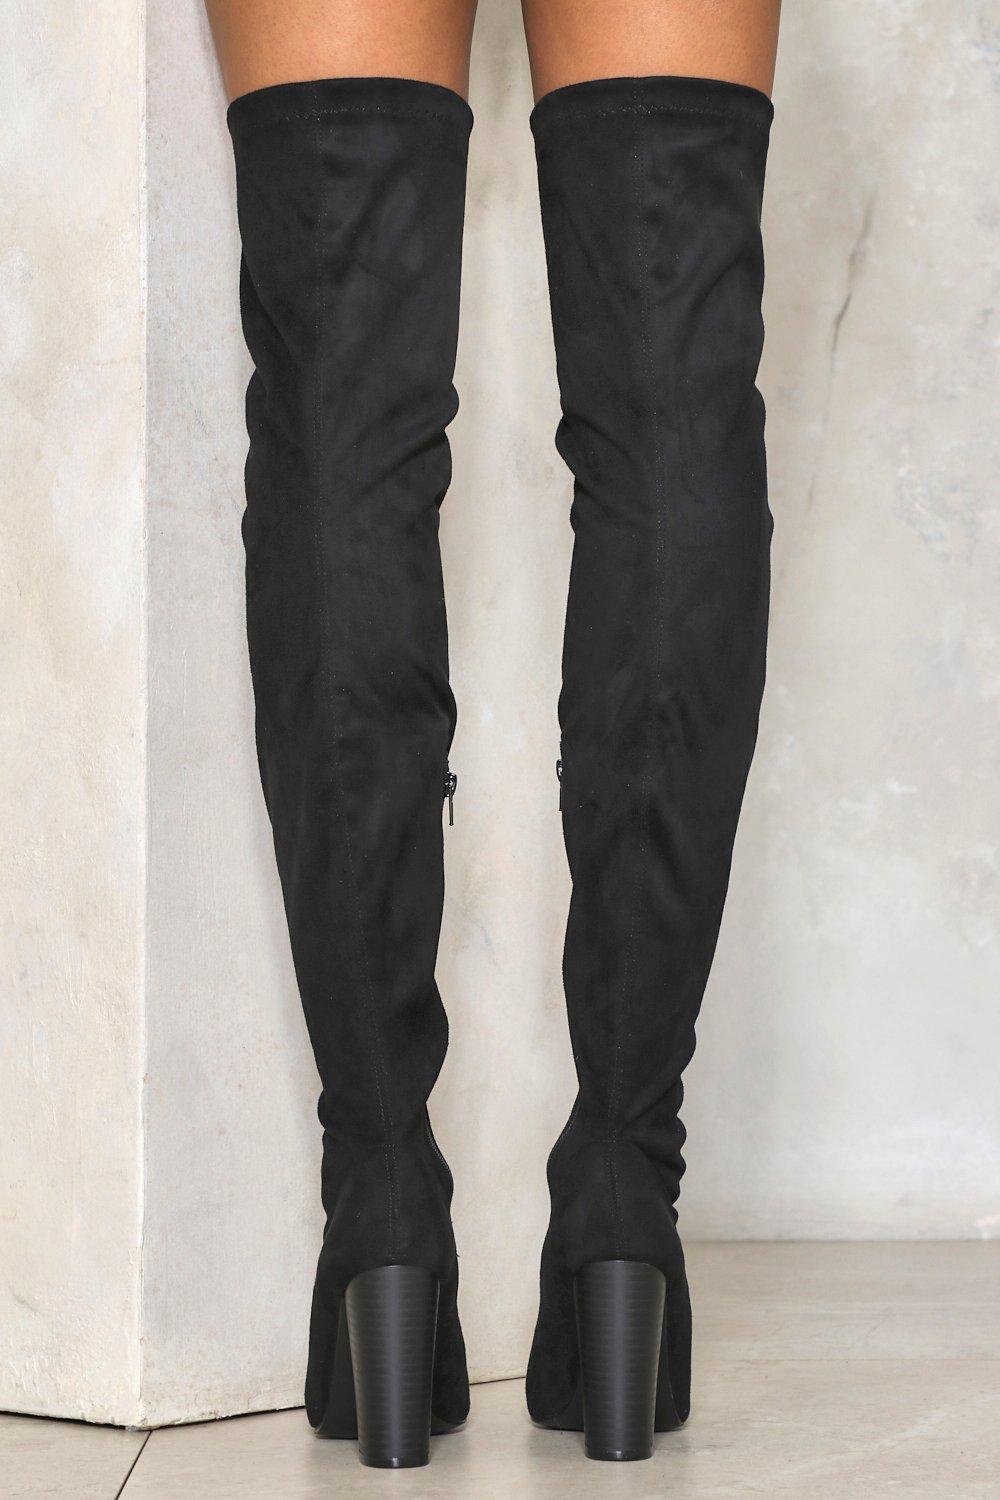 dark grey thigh high boots